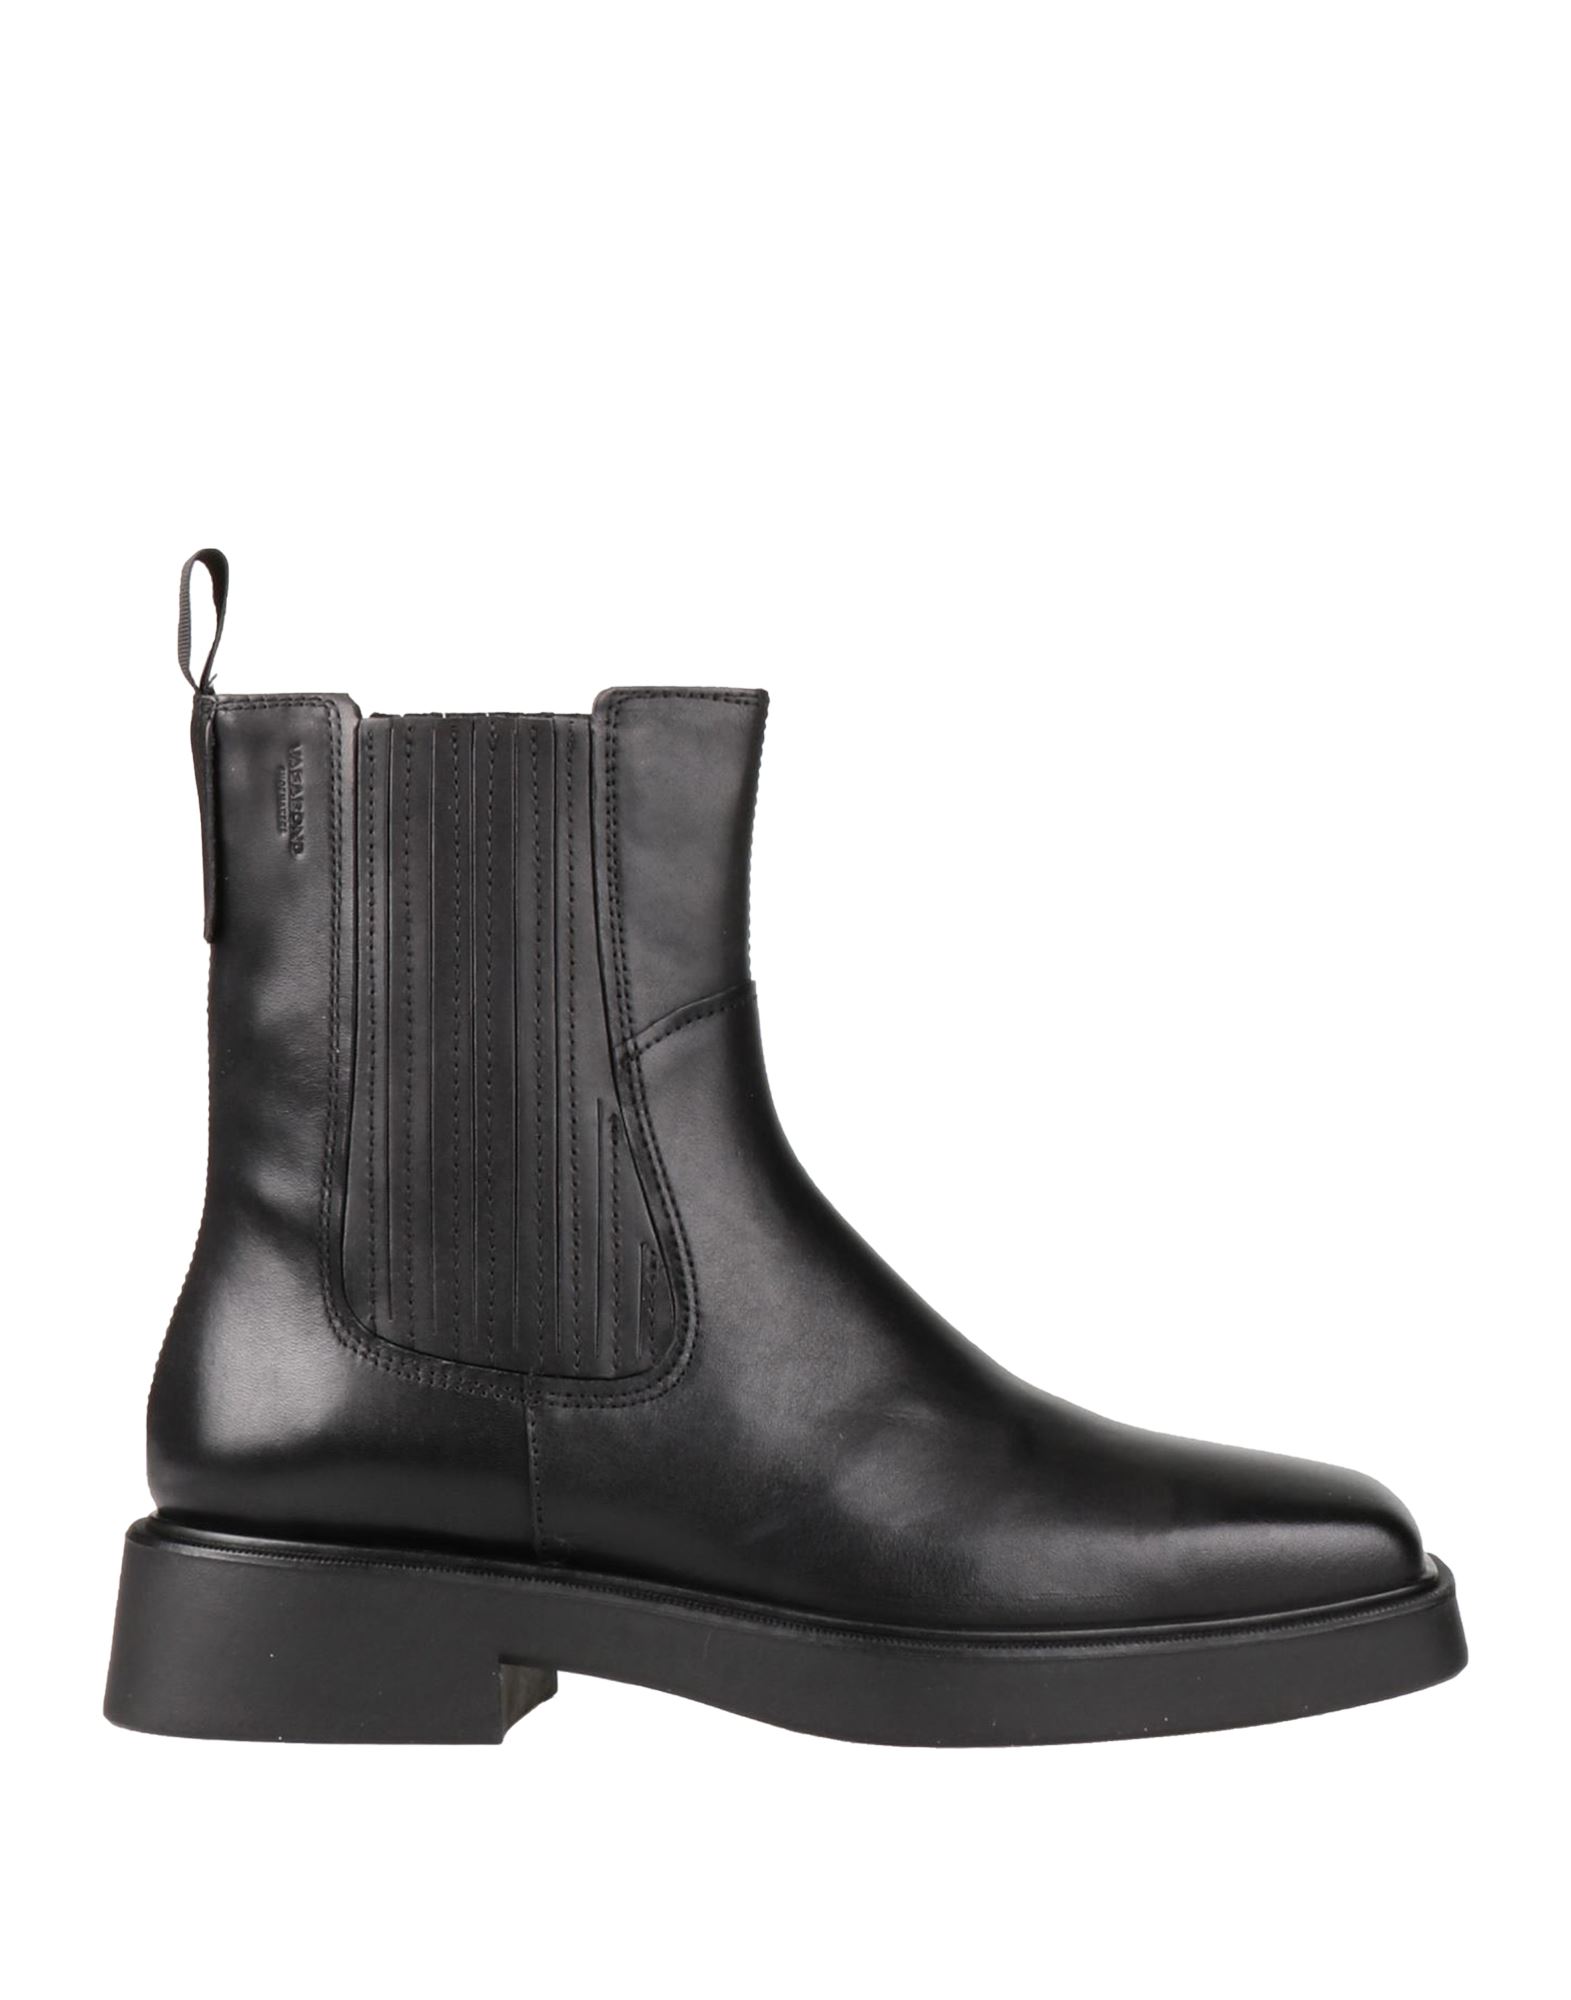 Shop Vagabond Shoemakers Woman Ankle Boots Black Size 8 Bovine Leather